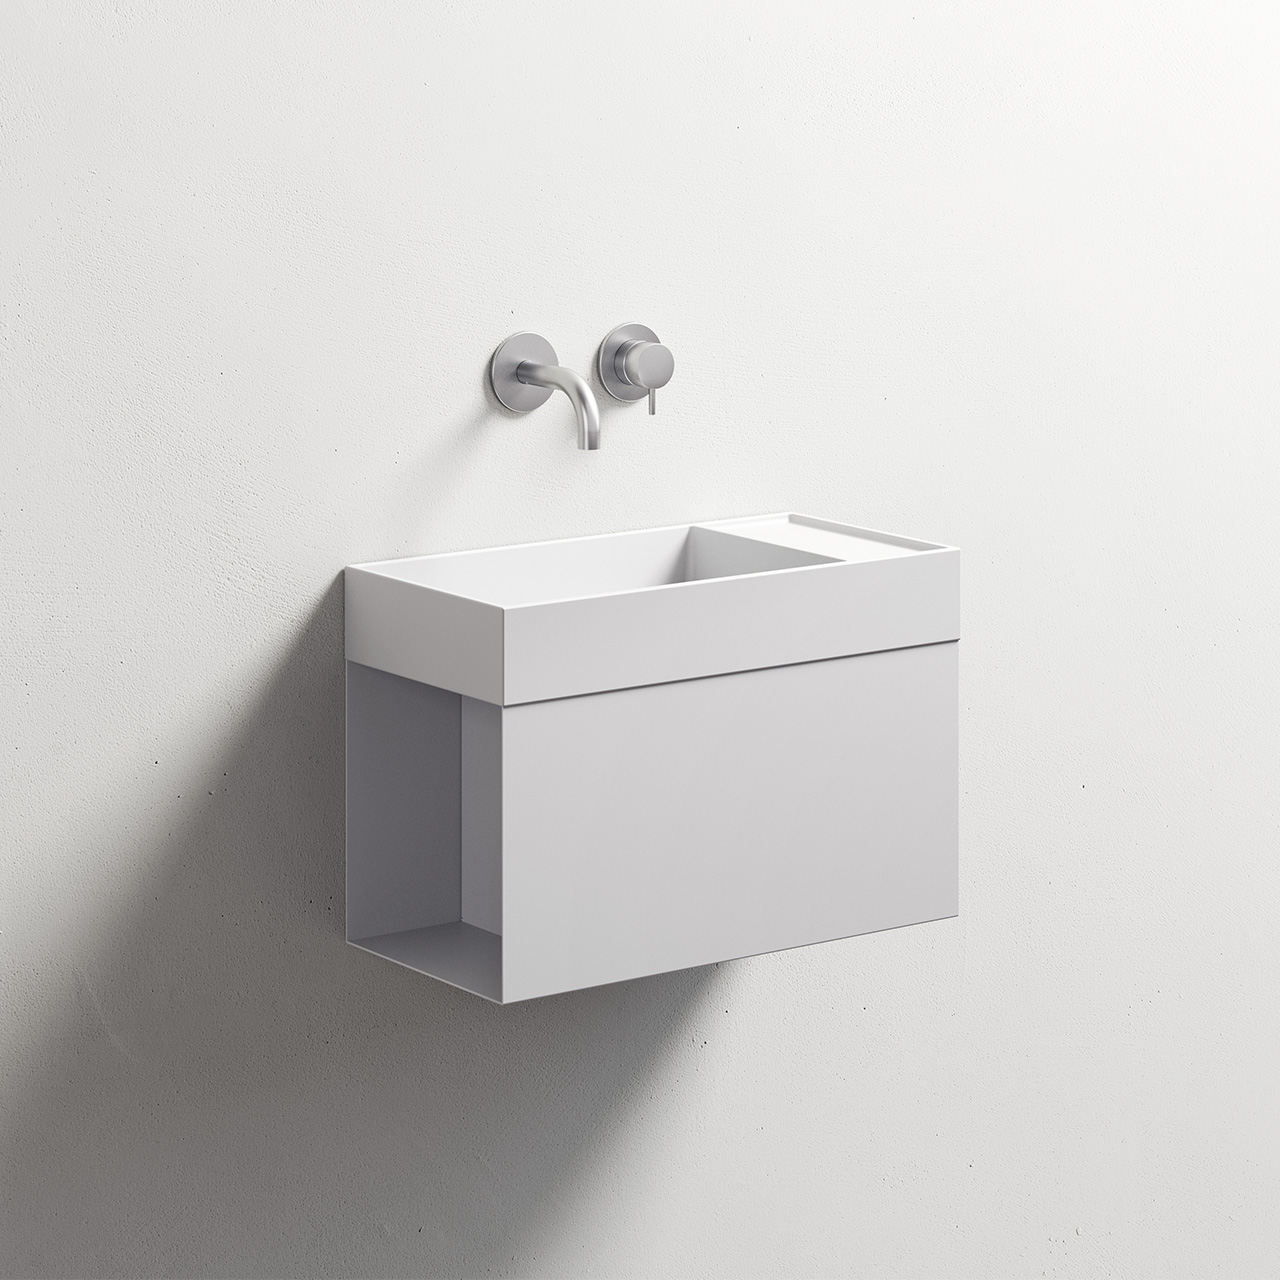 Box Handbasin - REXA Design